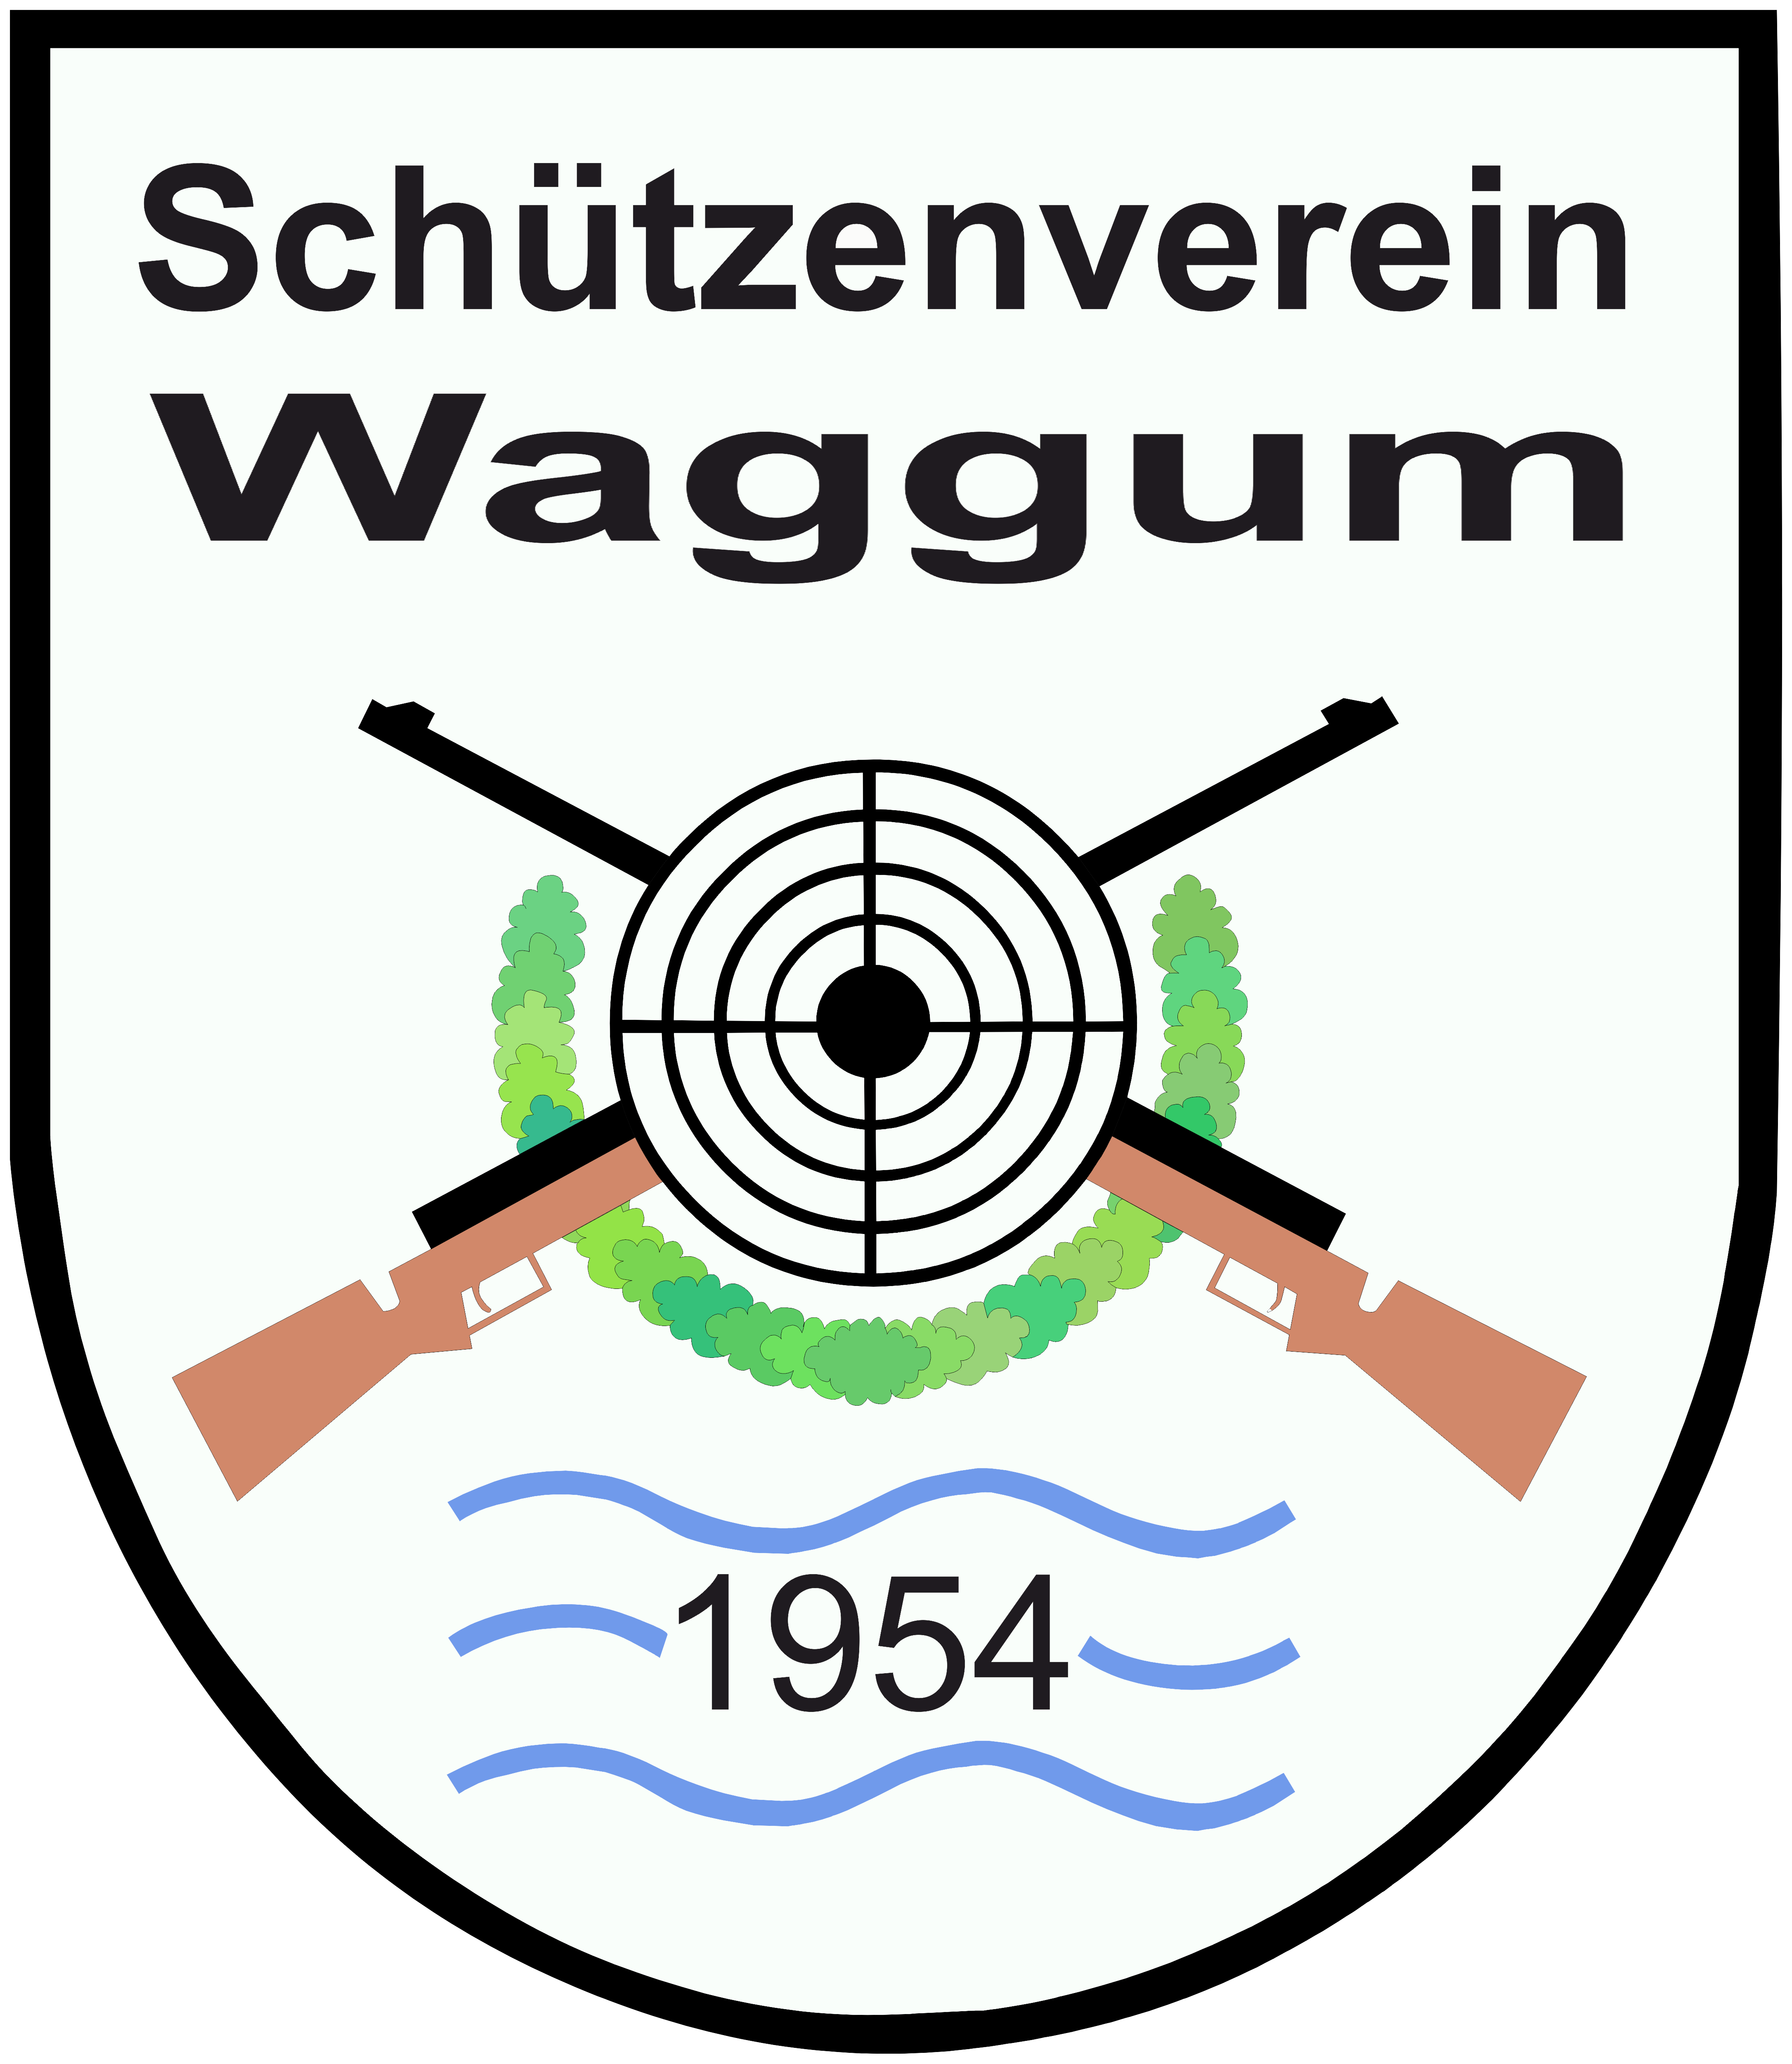 Wappen SV Waggum final 2019 weiß